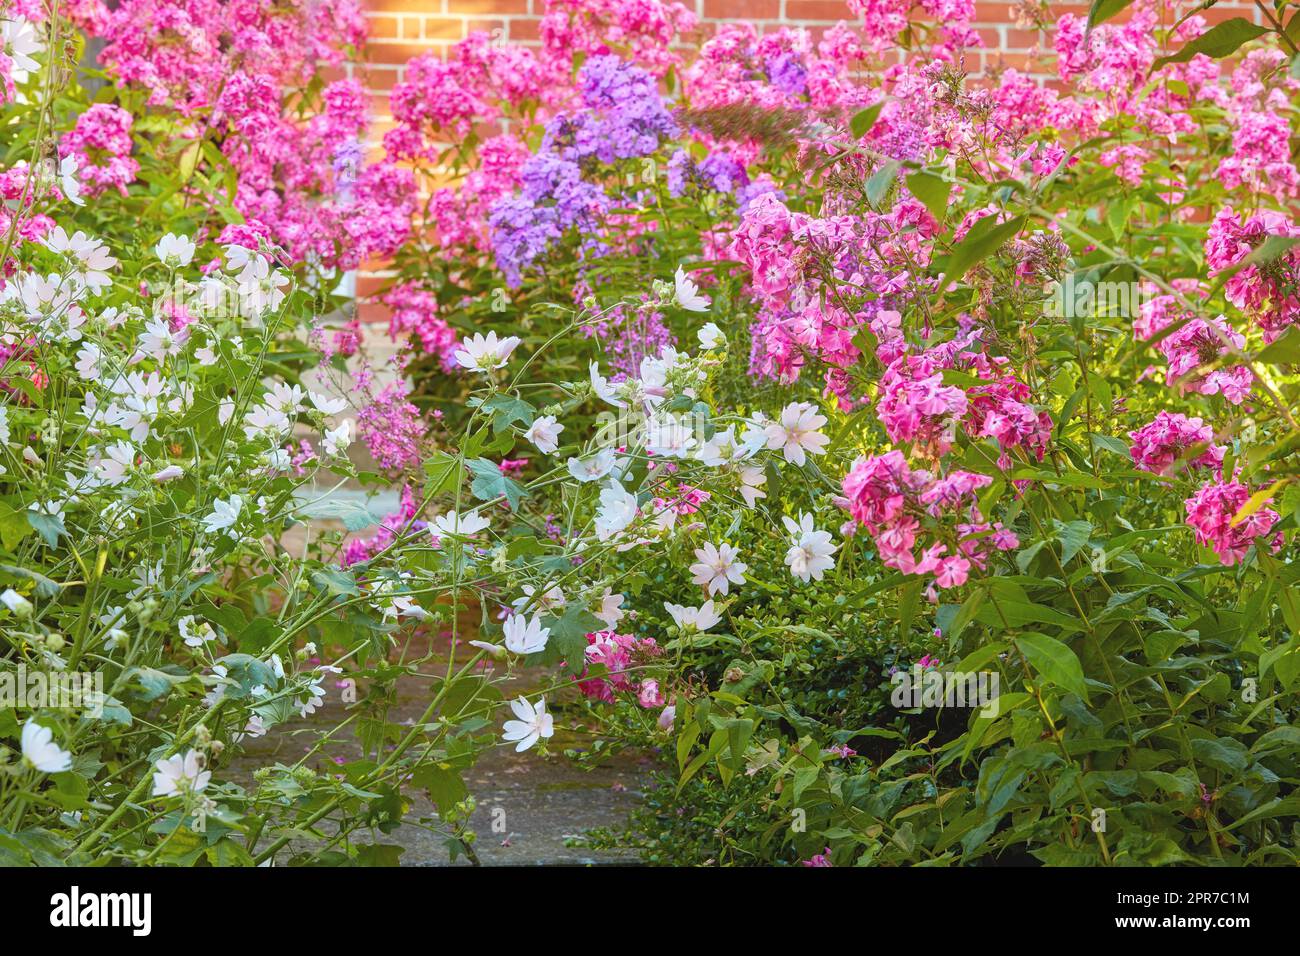 Un jardin avec des fleurs de coucou blanc et des fleurs de Phlox paniculata Pink Flame. Bush de fleurs fleuries dans le jardin par une journée ensoleillée. Un pré rempli de fleurs colorées avec un mur en arrière-plan Banque D'Images